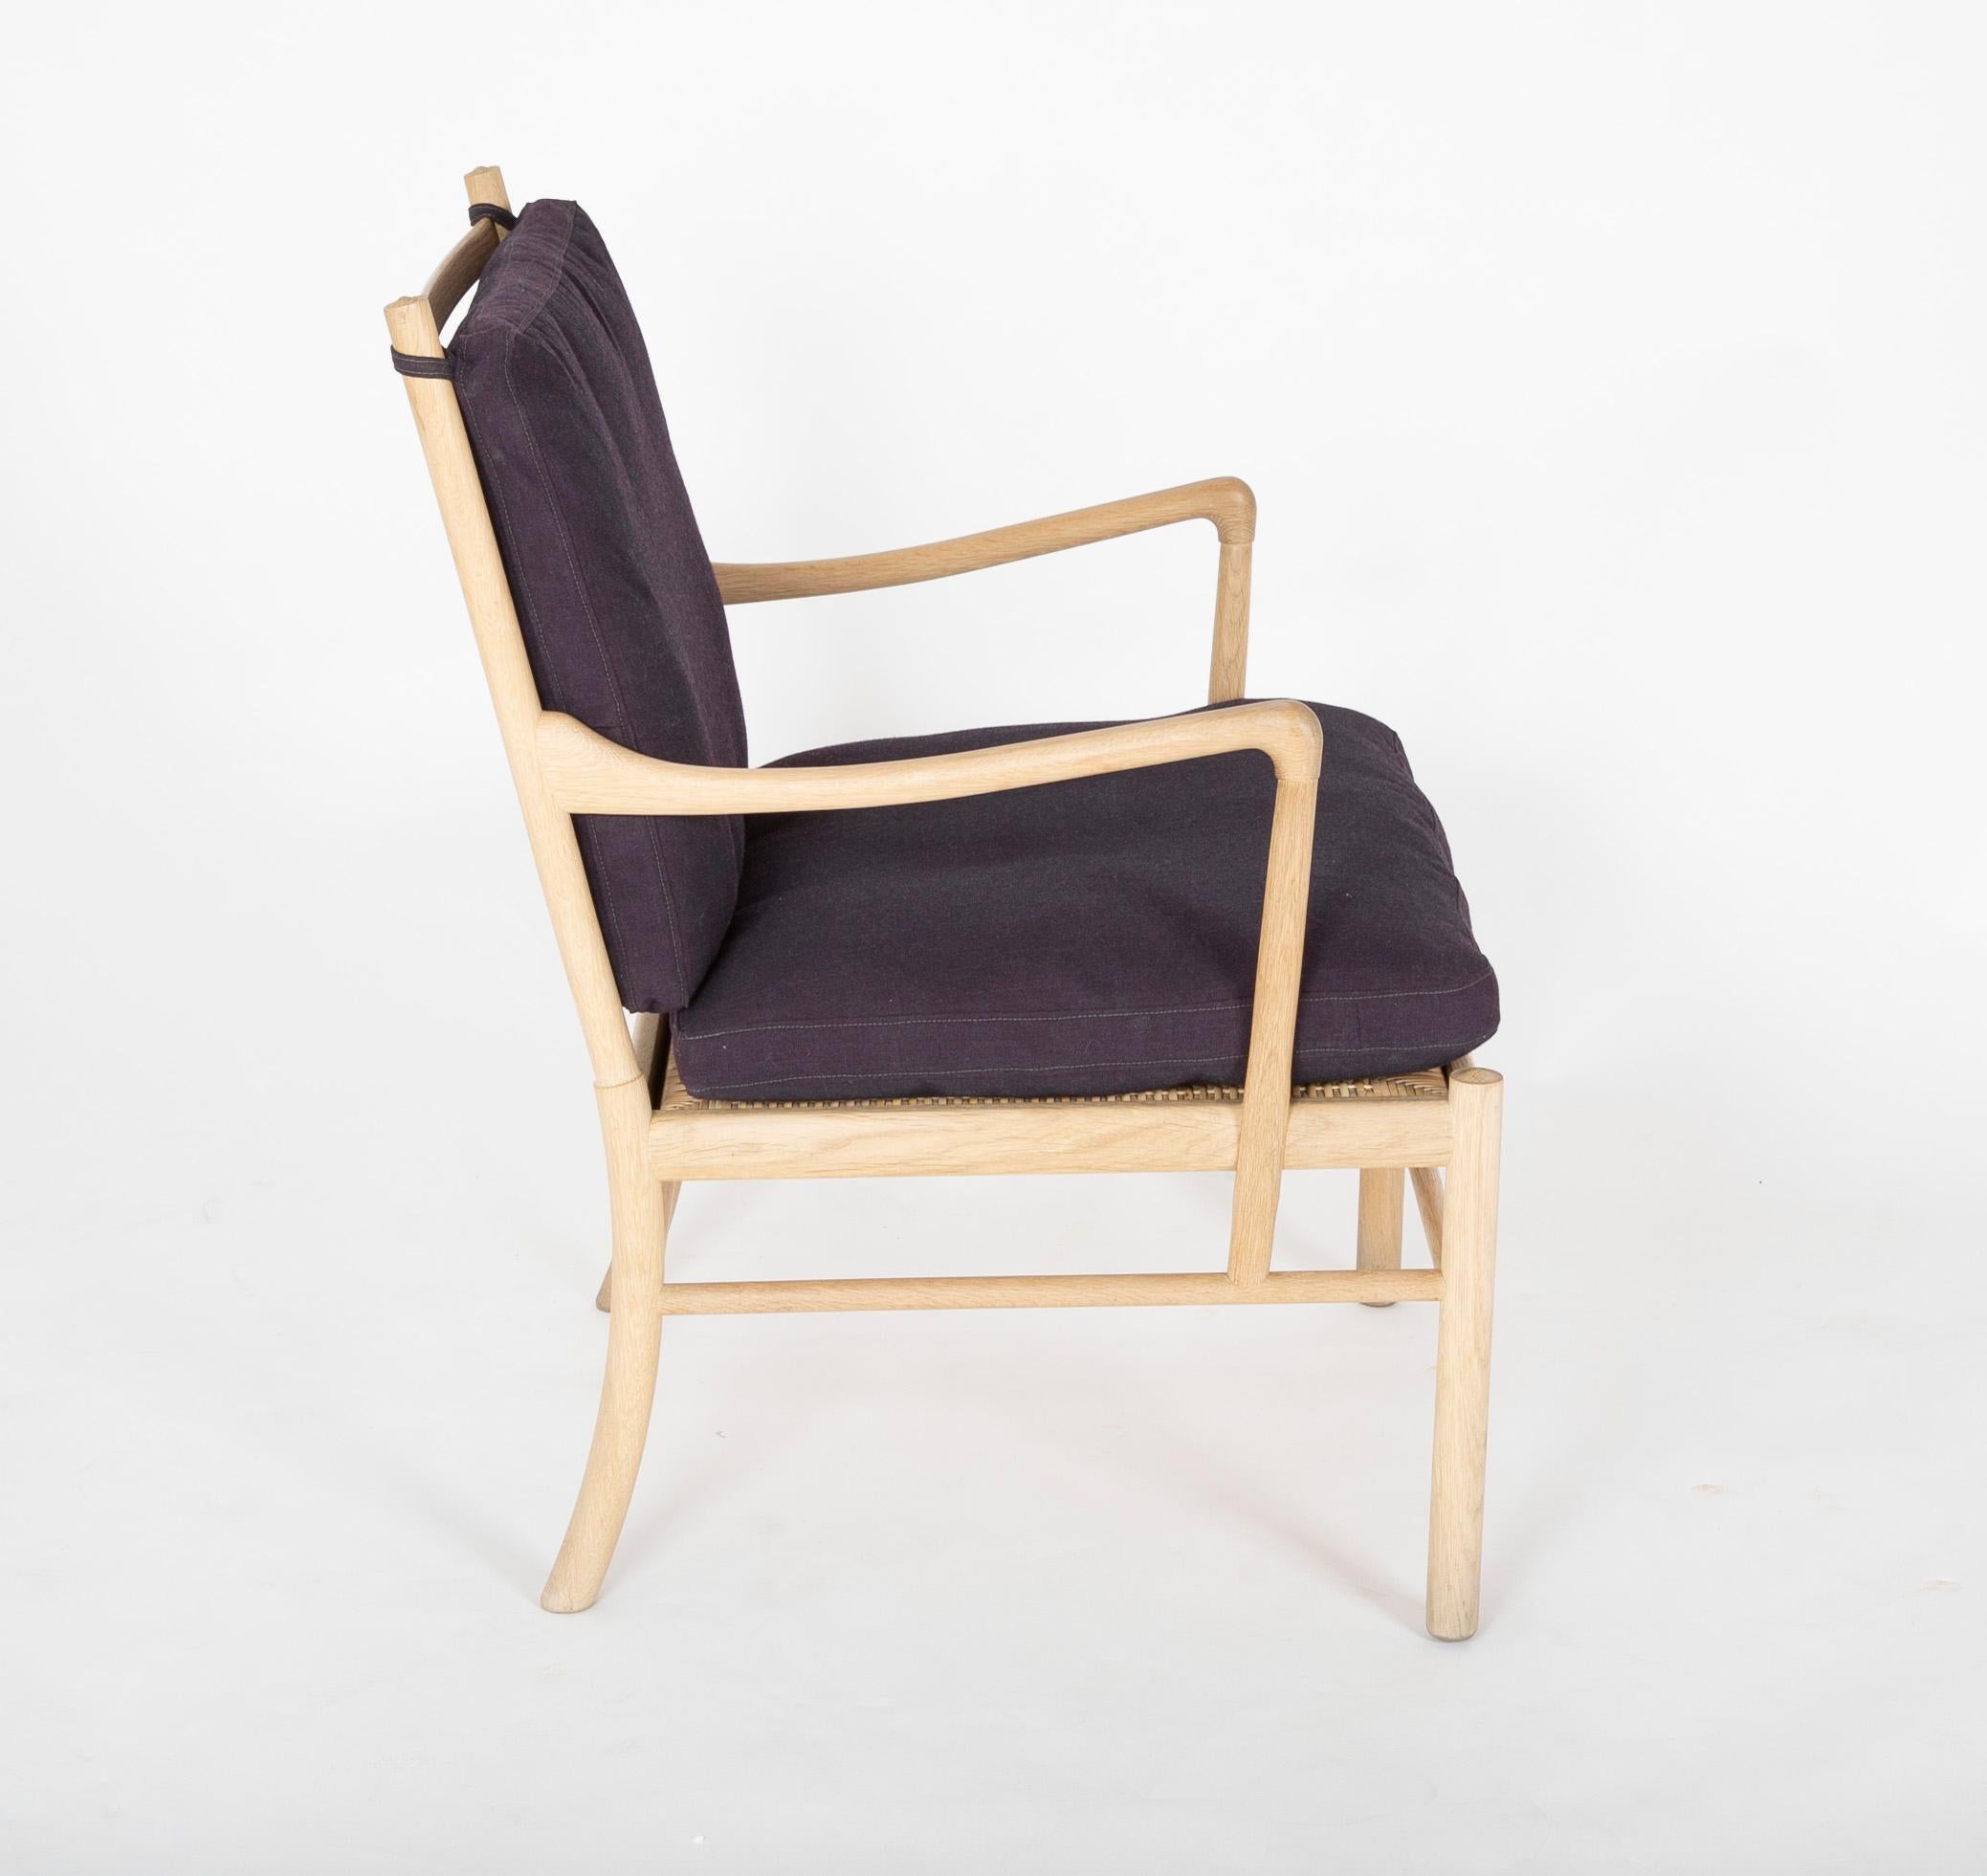 Oak Ole Wanscher 'Colonial Chair' 'OW 149' for Carl Hansen & Sons